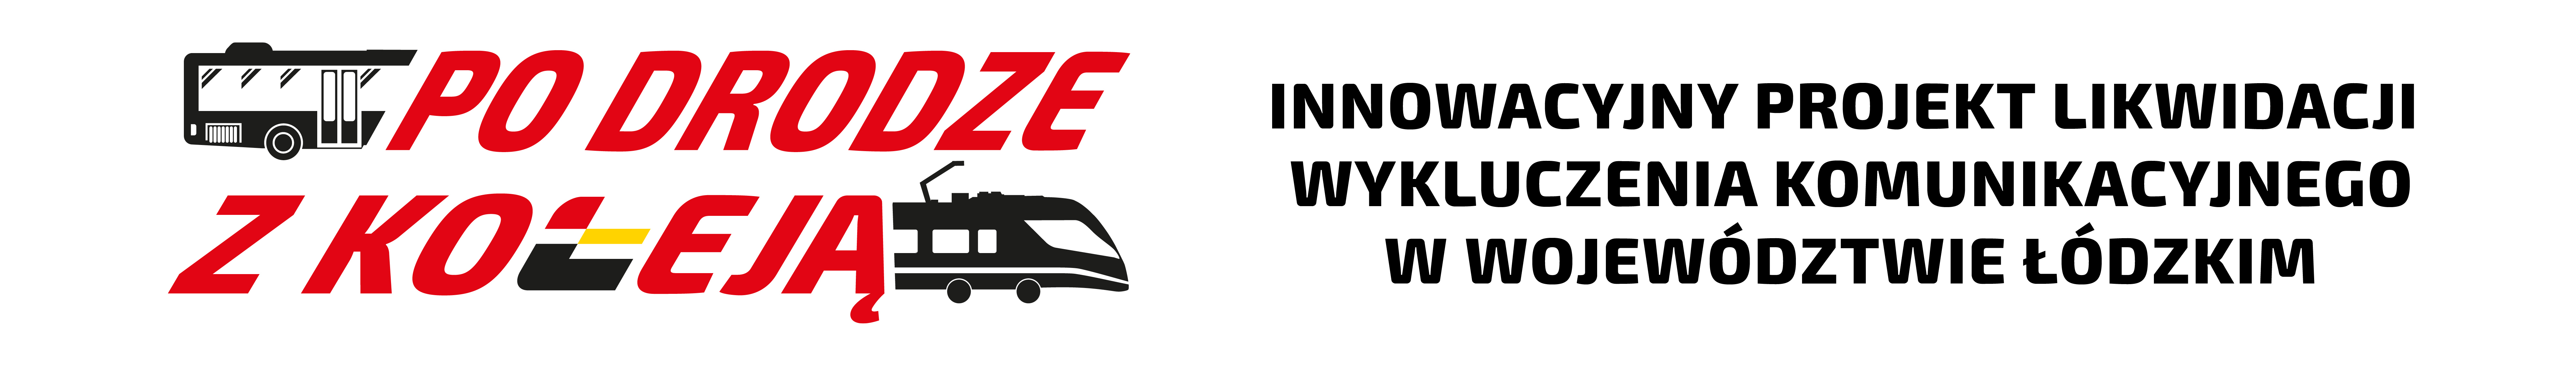 Logo "Po drodze z koleją" oraz napis: innowacyjny projekt likwidacji wykluczenia komunikacyjnego w województwie łódzkim.